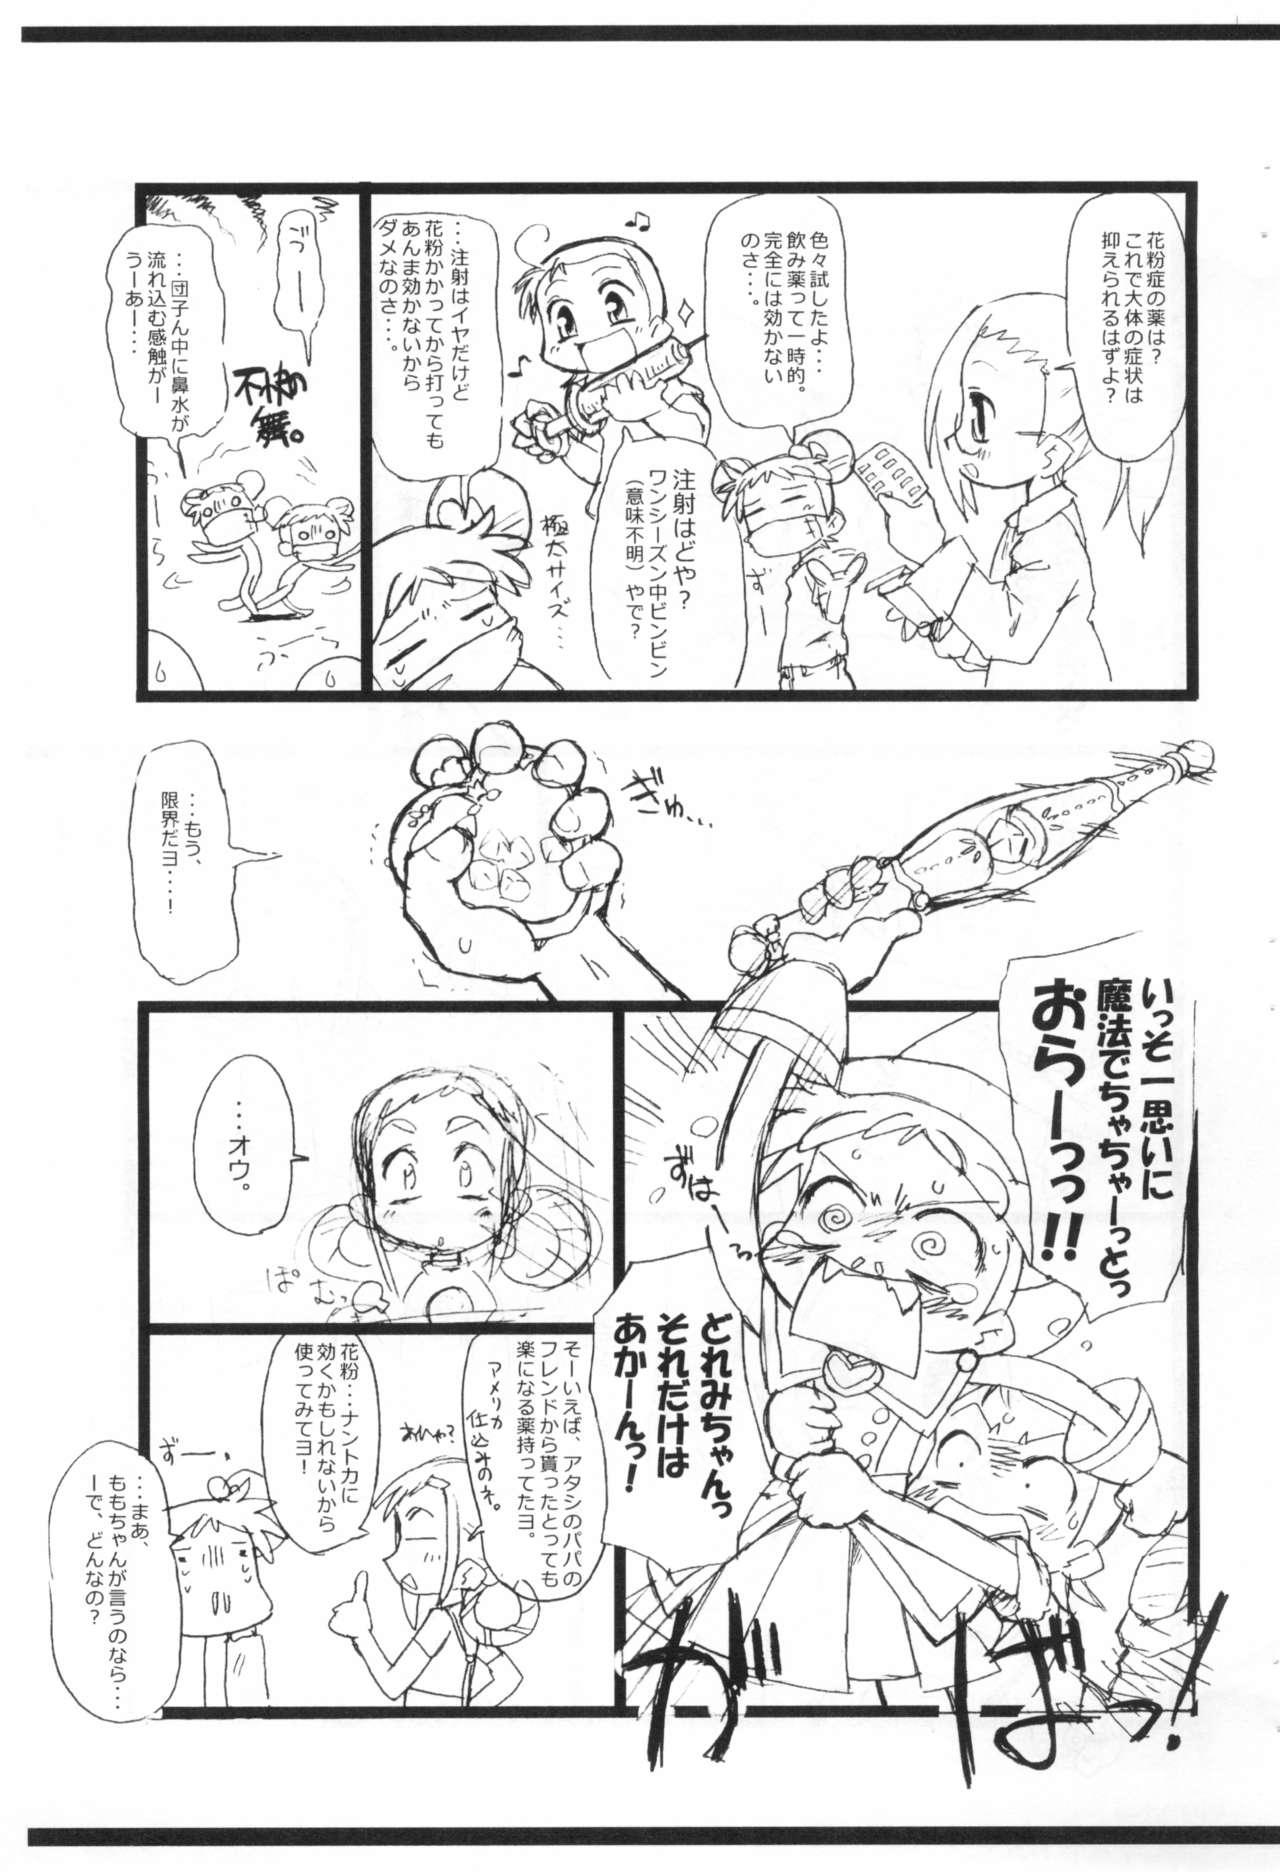 Nuru Kafun to Kiseichuu to Majo Minarai. - Ojamajo doremi | magical doremi Hooker - Page 5